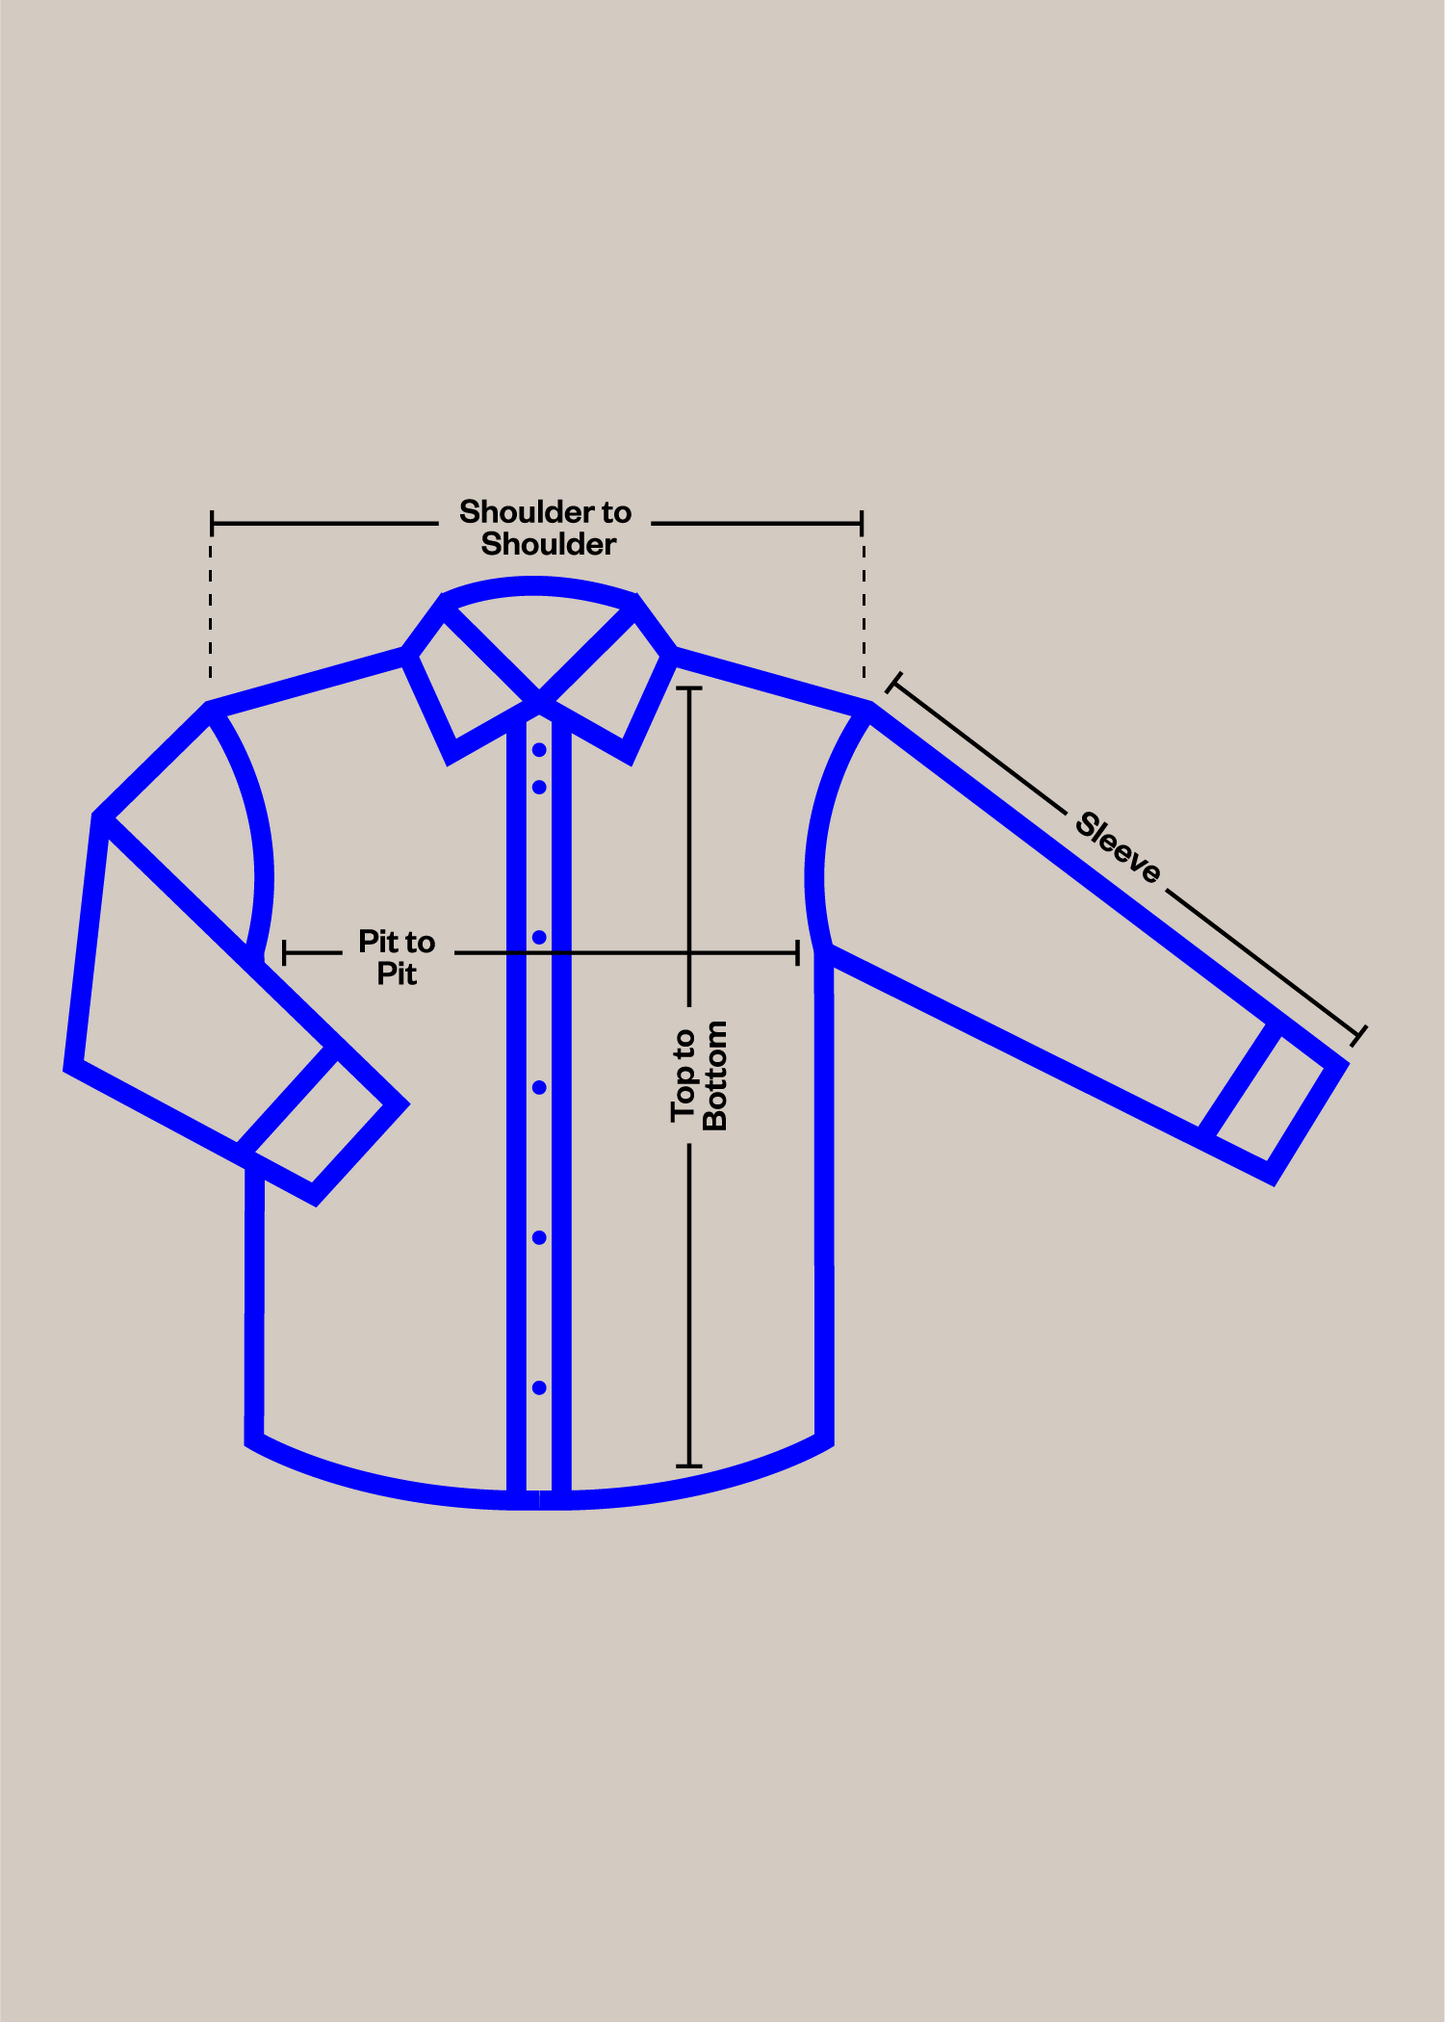 1980s Mr. Leggs Cotton Flannel Button Up Shirt Size M/L